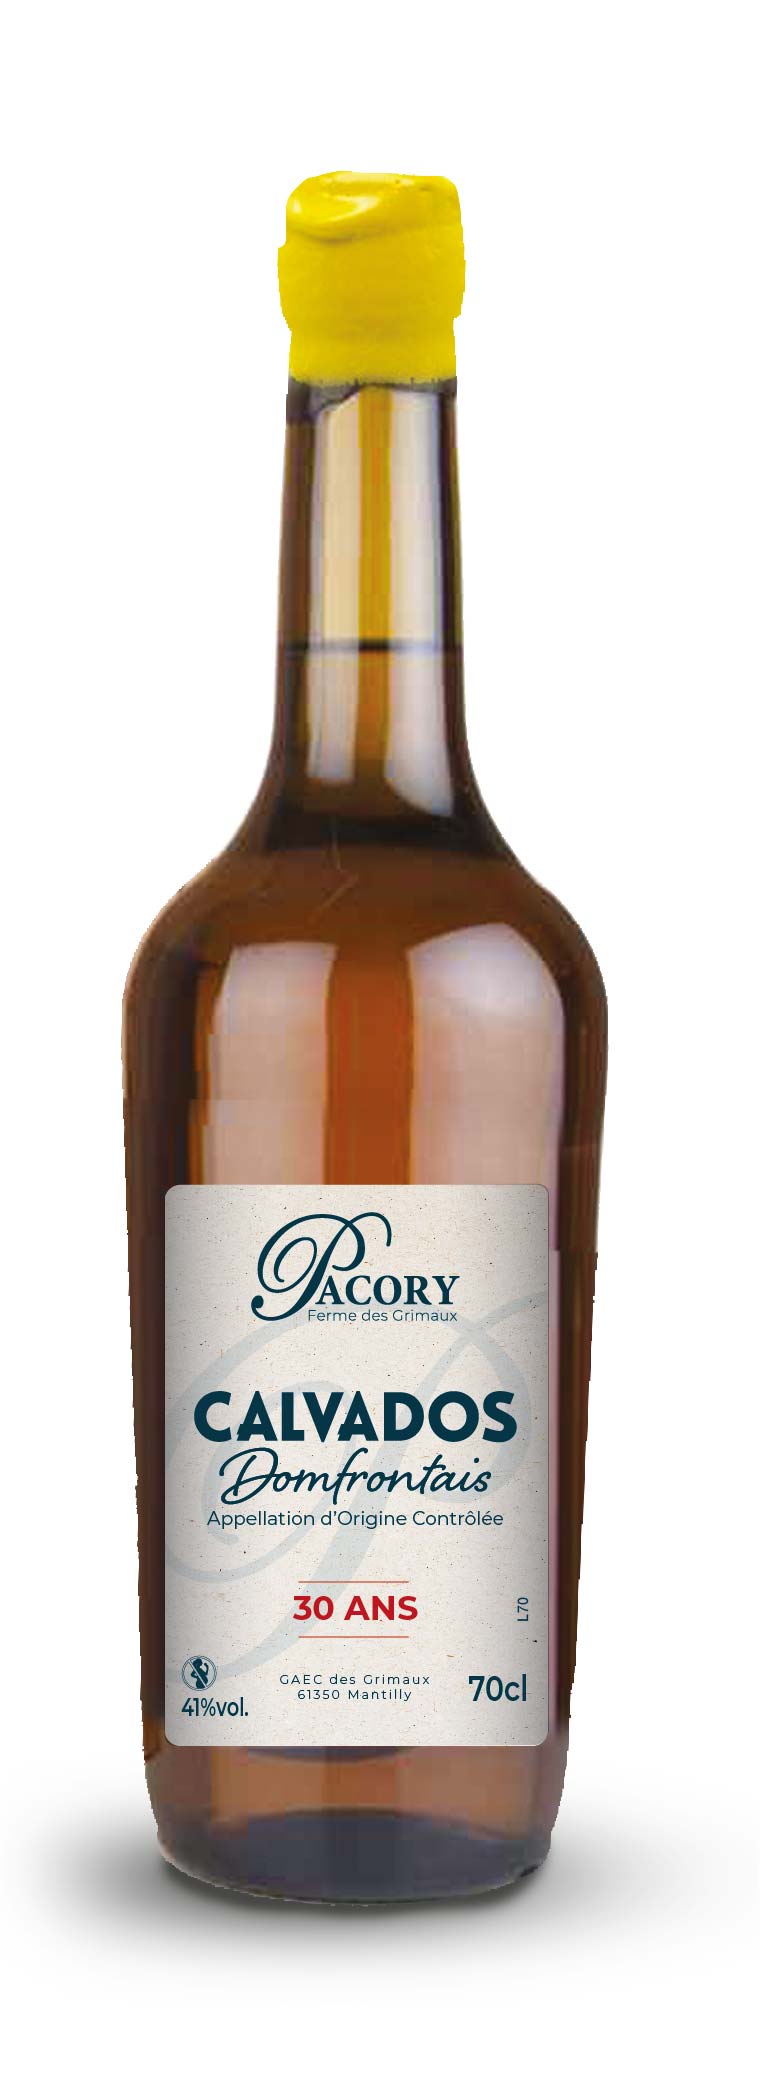 Calvados Domfrontais Pacory 30ans